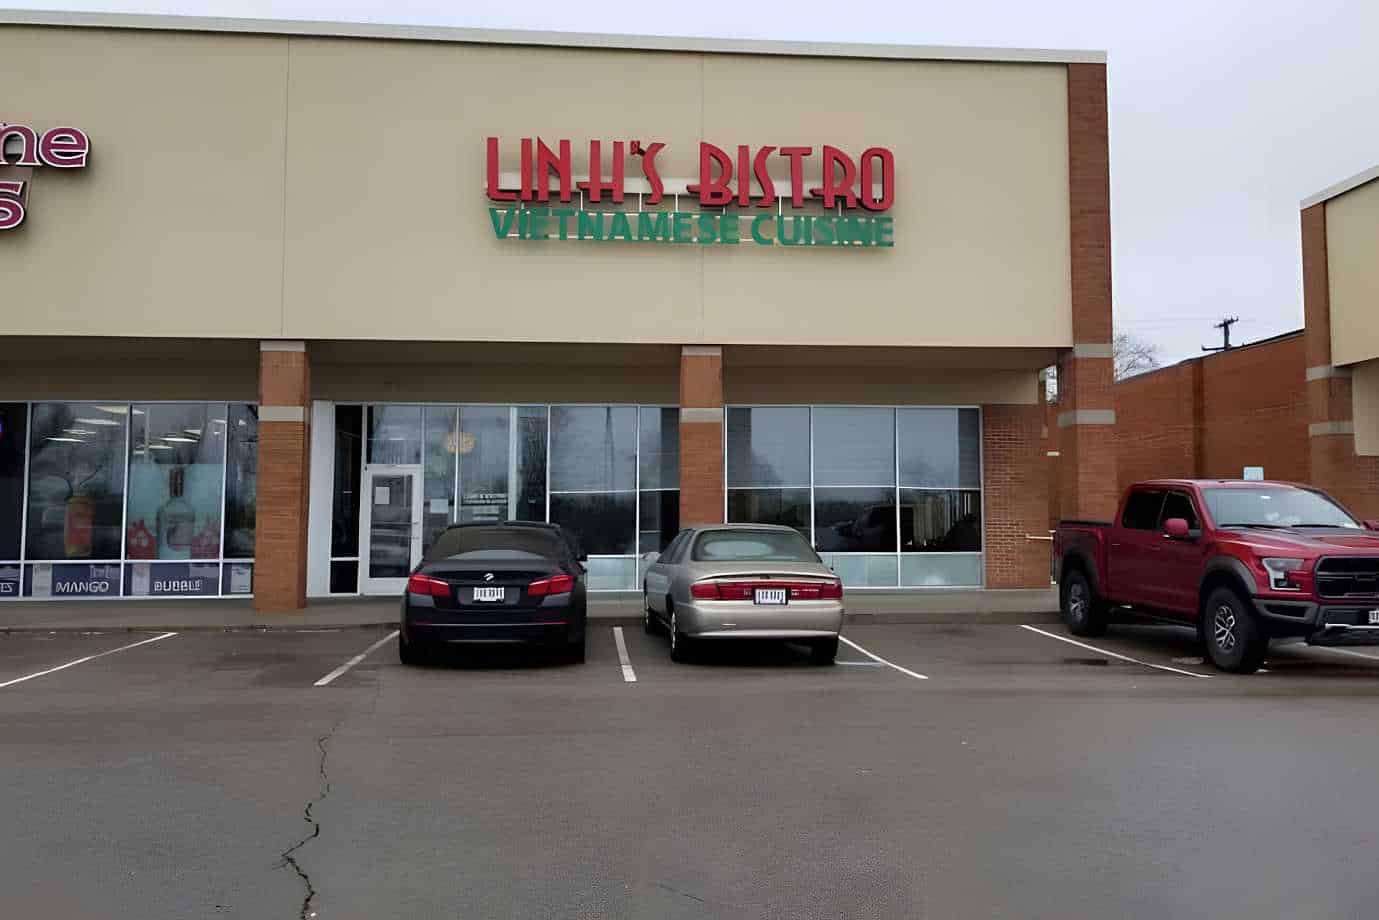 Linh's Bistro Best Restaurants in Dayton, OH